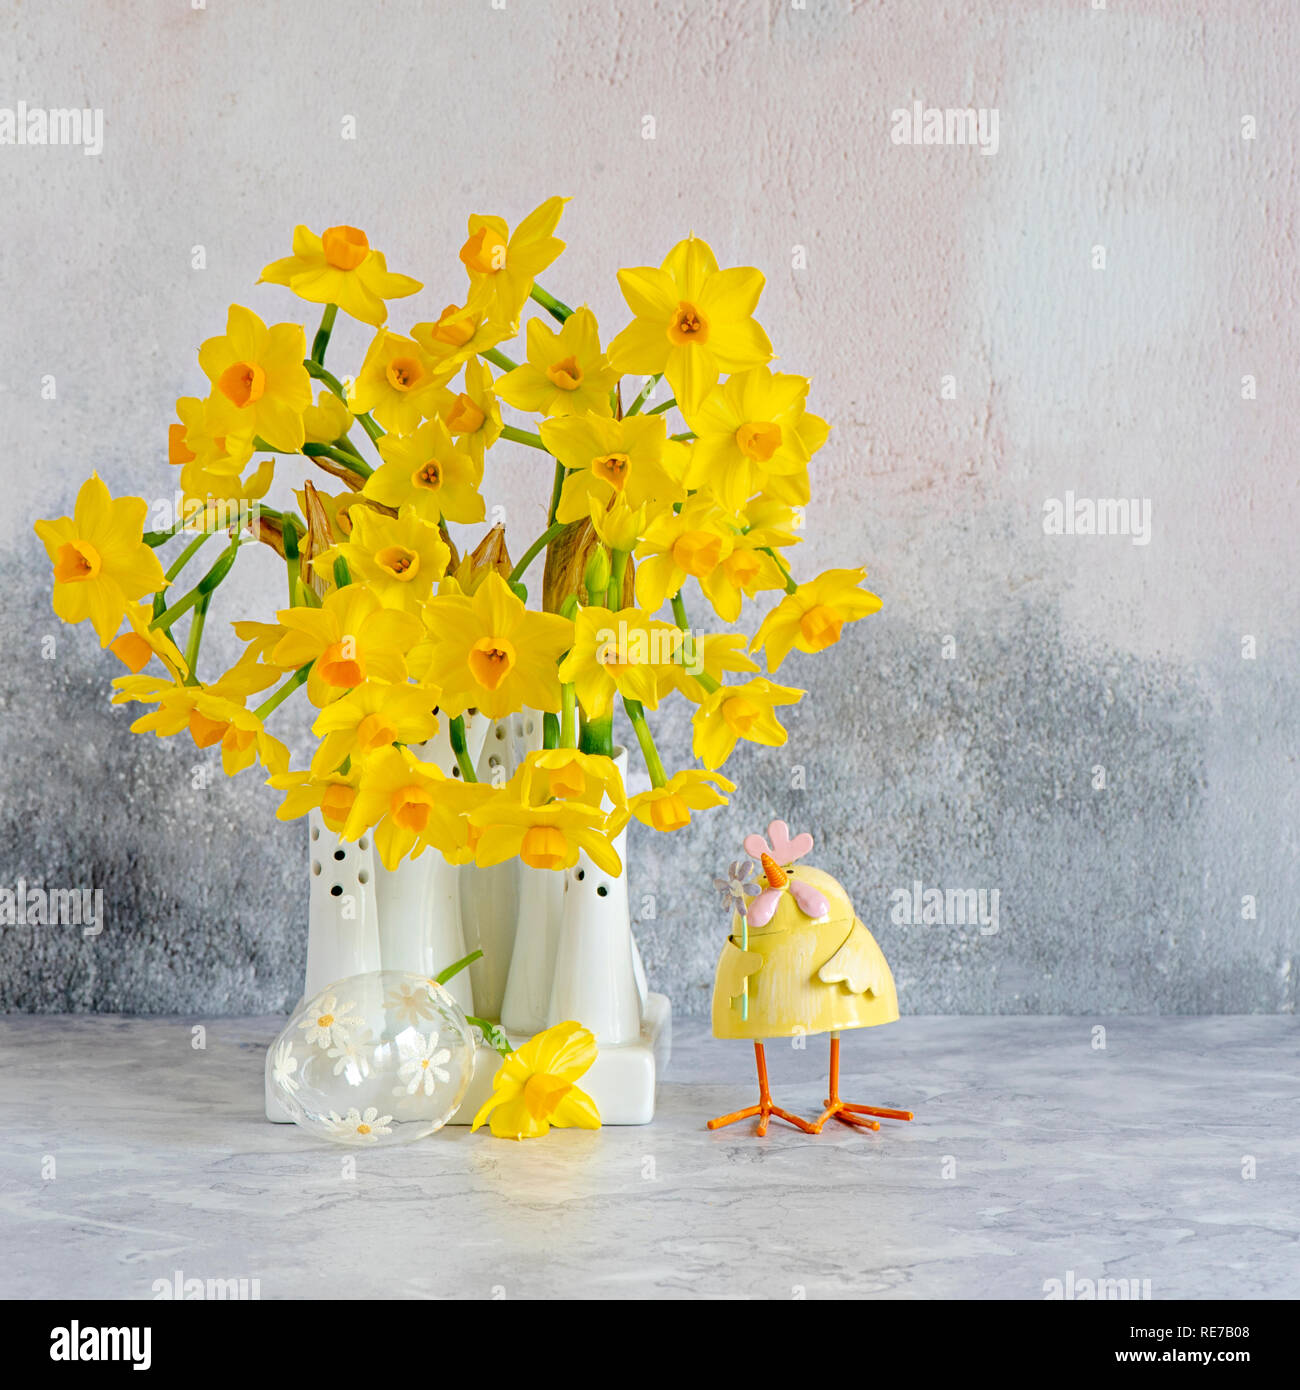 Beau printemps, jaune Narcissus 'Tête-à-tête' - jonquilles disposés de vases en porcelaine blanche Banque D'Images